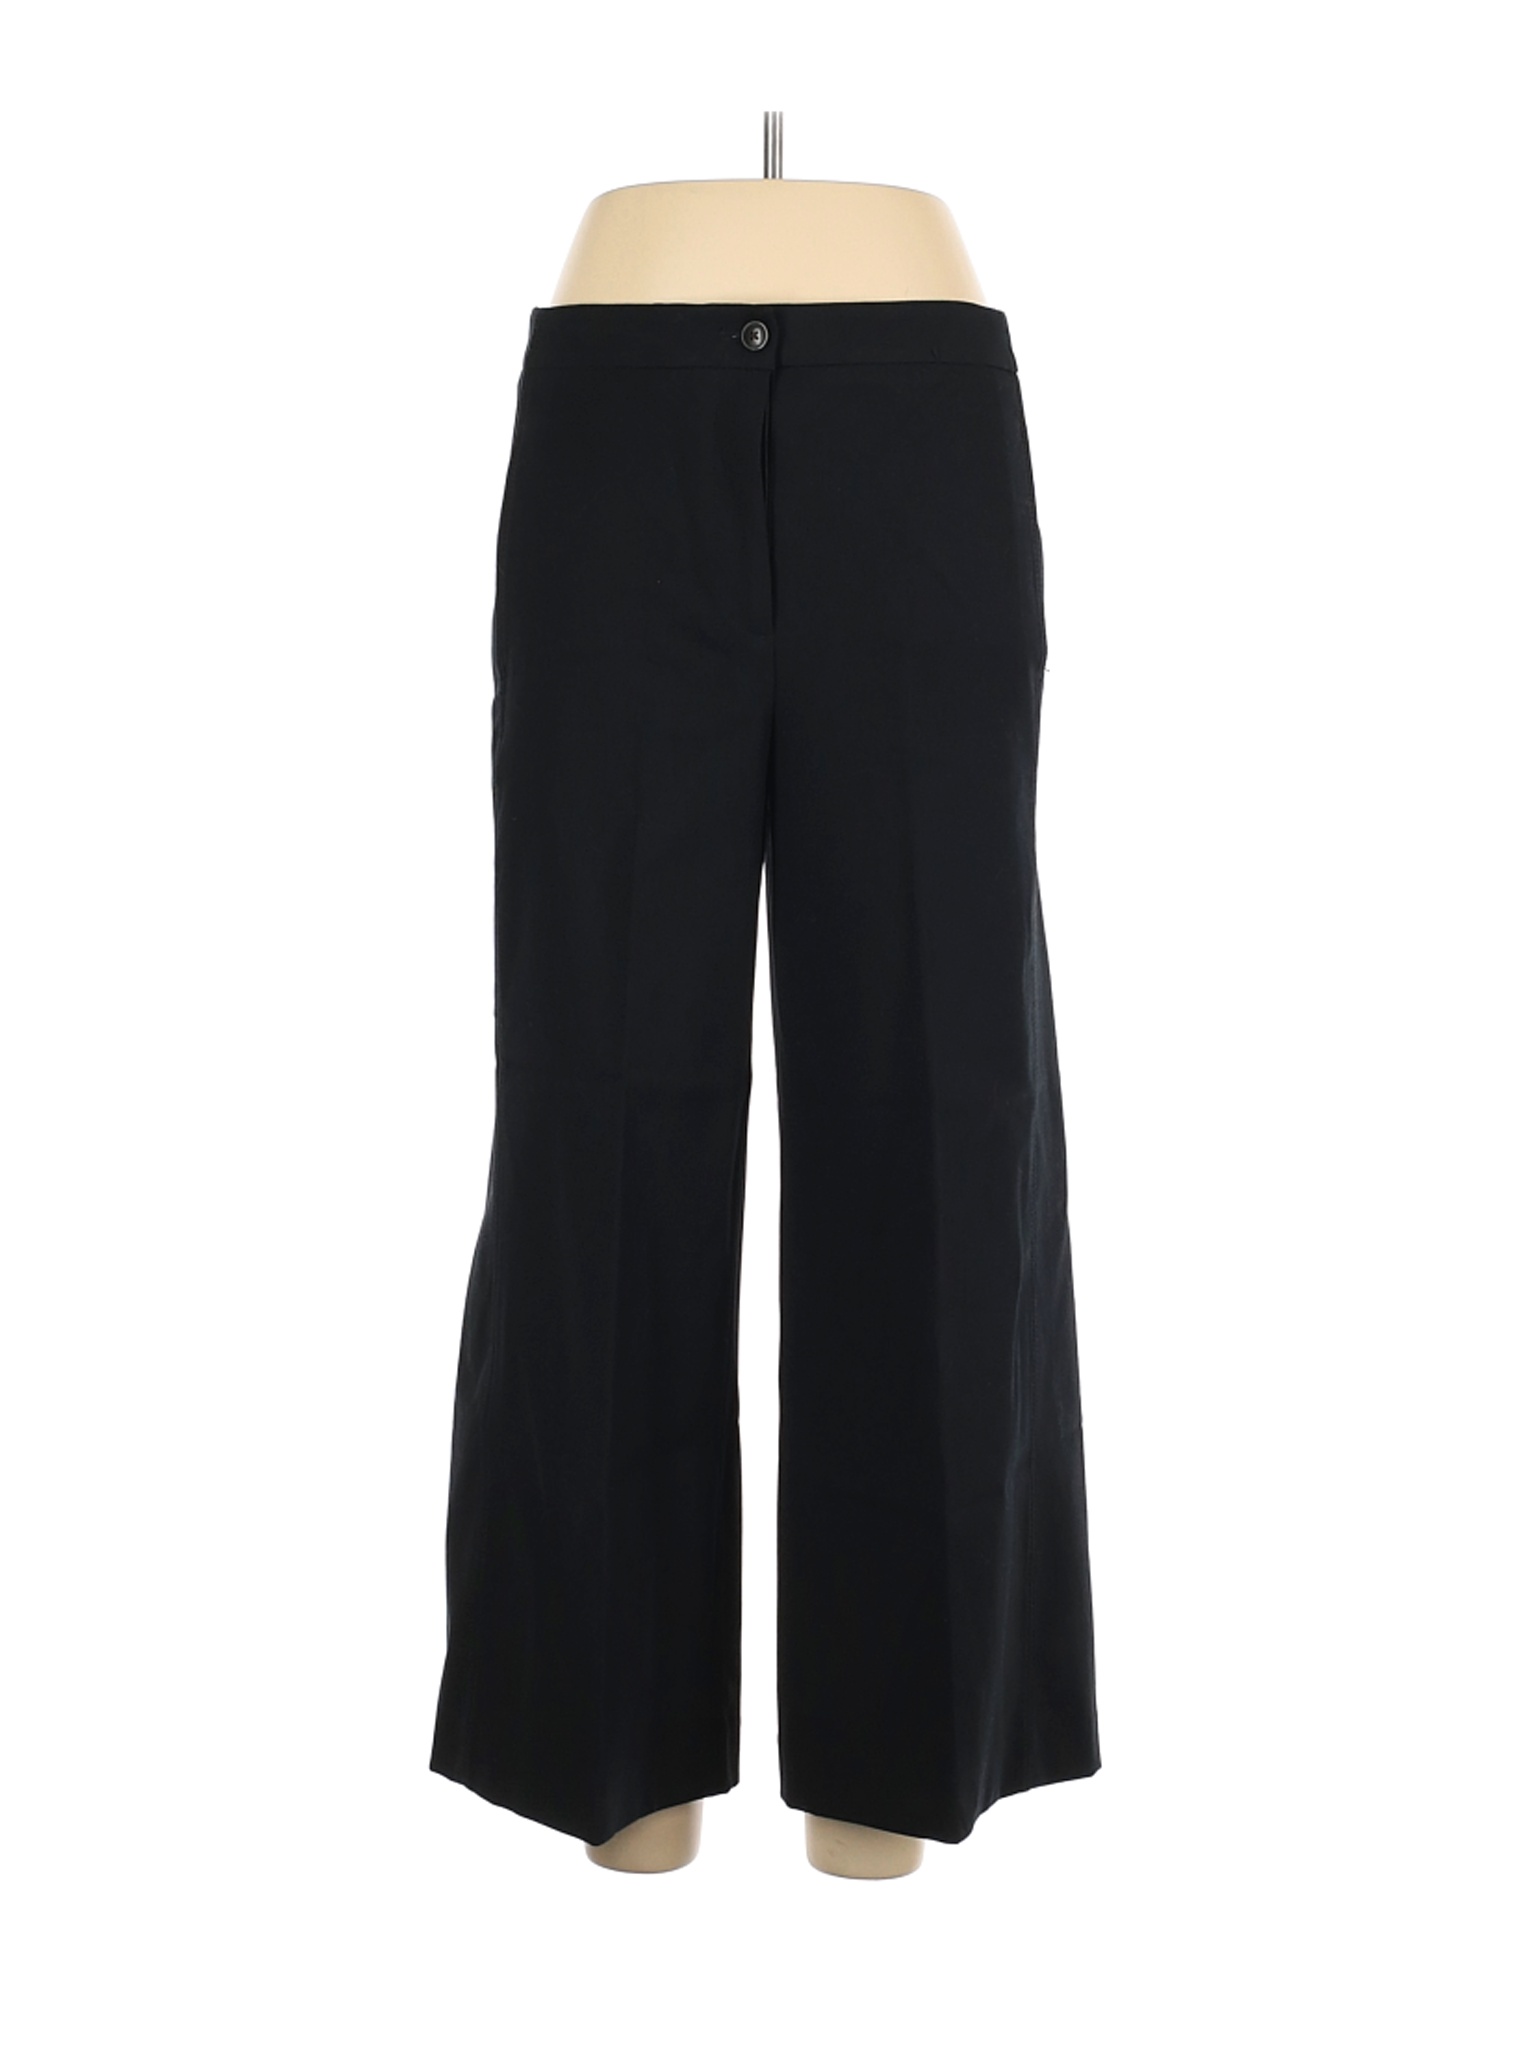 Ann Taylor Women Black Dress Pants 10 | eBay